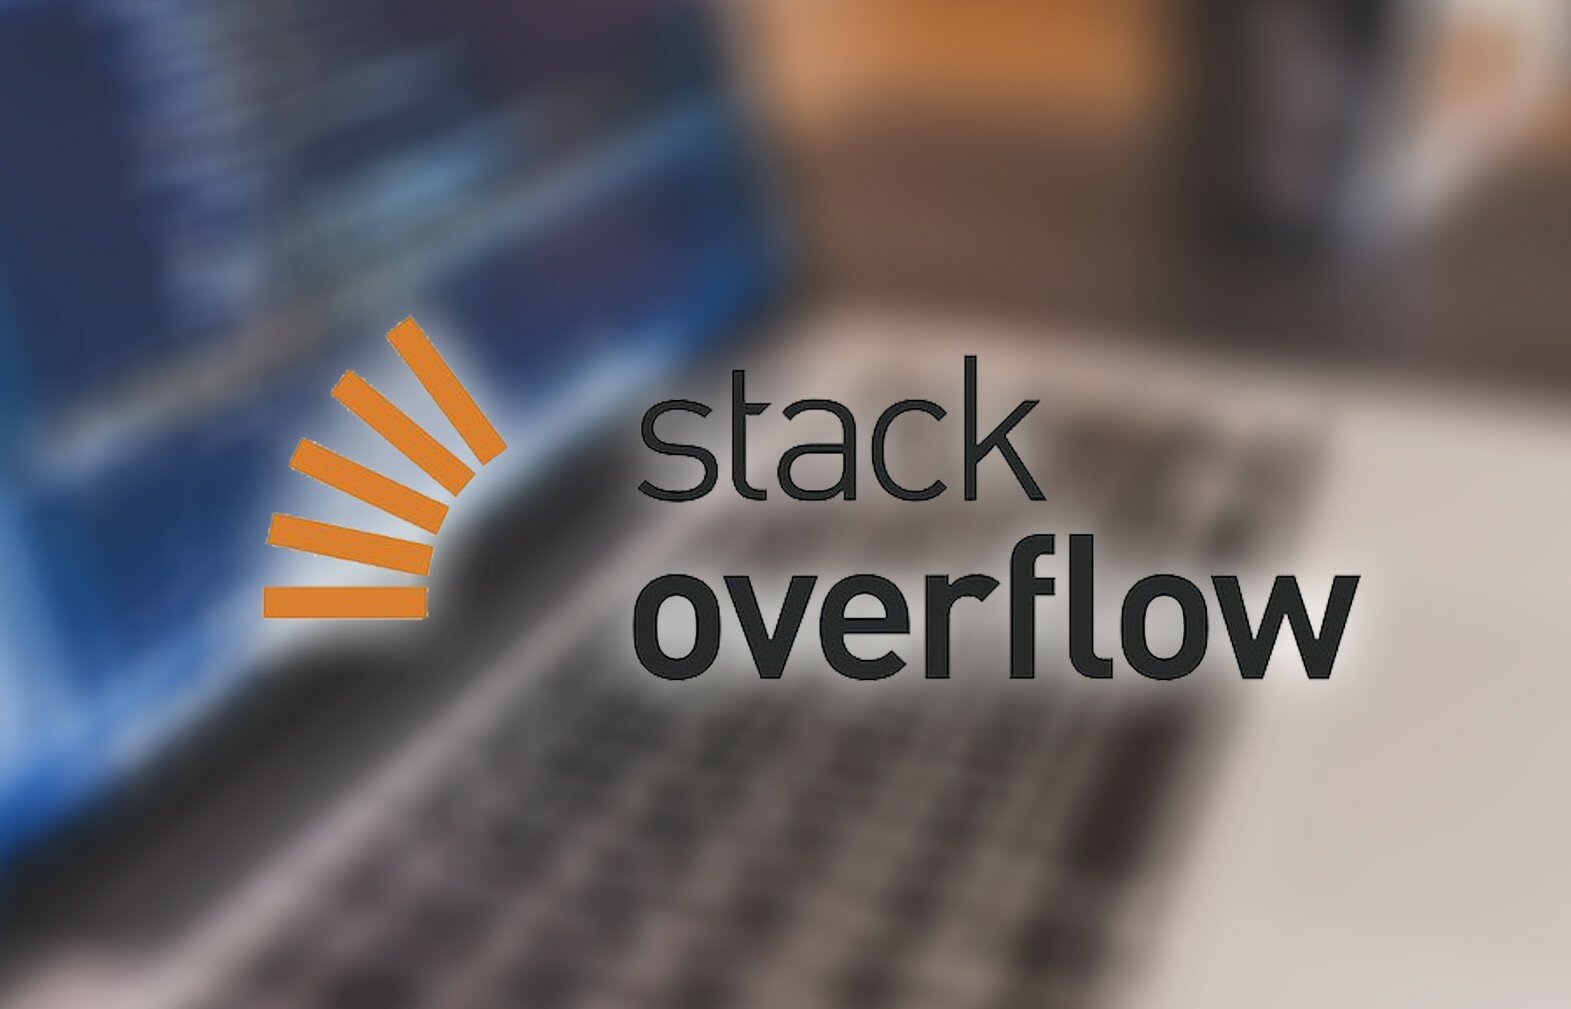 Крупнейший форум для программистов Stack Overflow продали инвестору Mail.ru и Avito